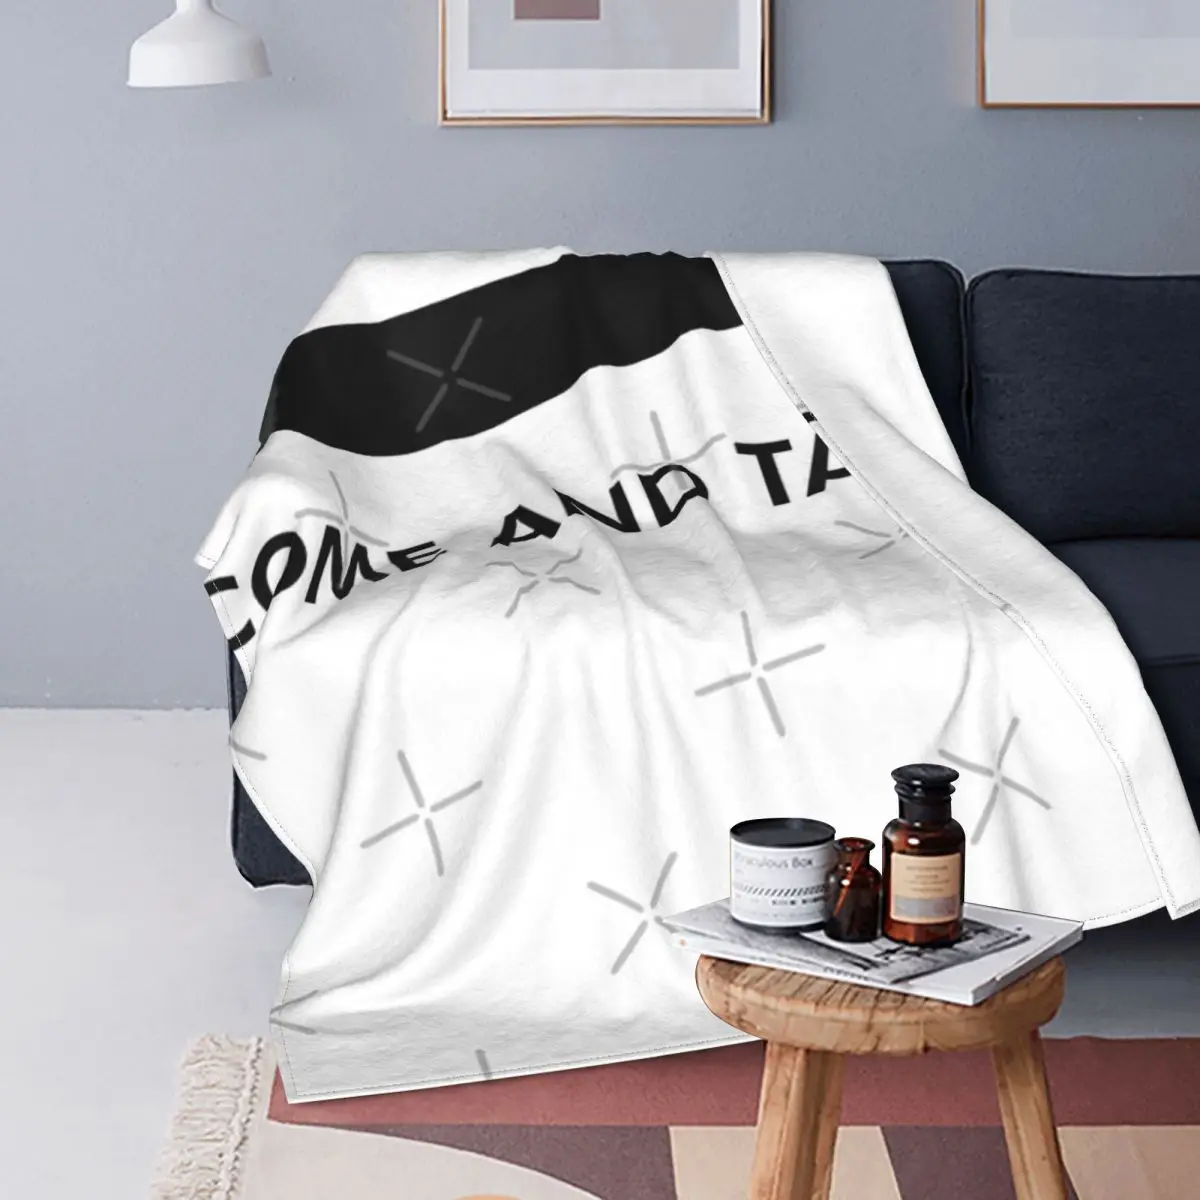 

Забавное техасское одеяло с надписью «Come And Take It 3», покрывало на кровать, плед, покрывала, аниме одеяло, тепловое покрывало, покрывало 220x240